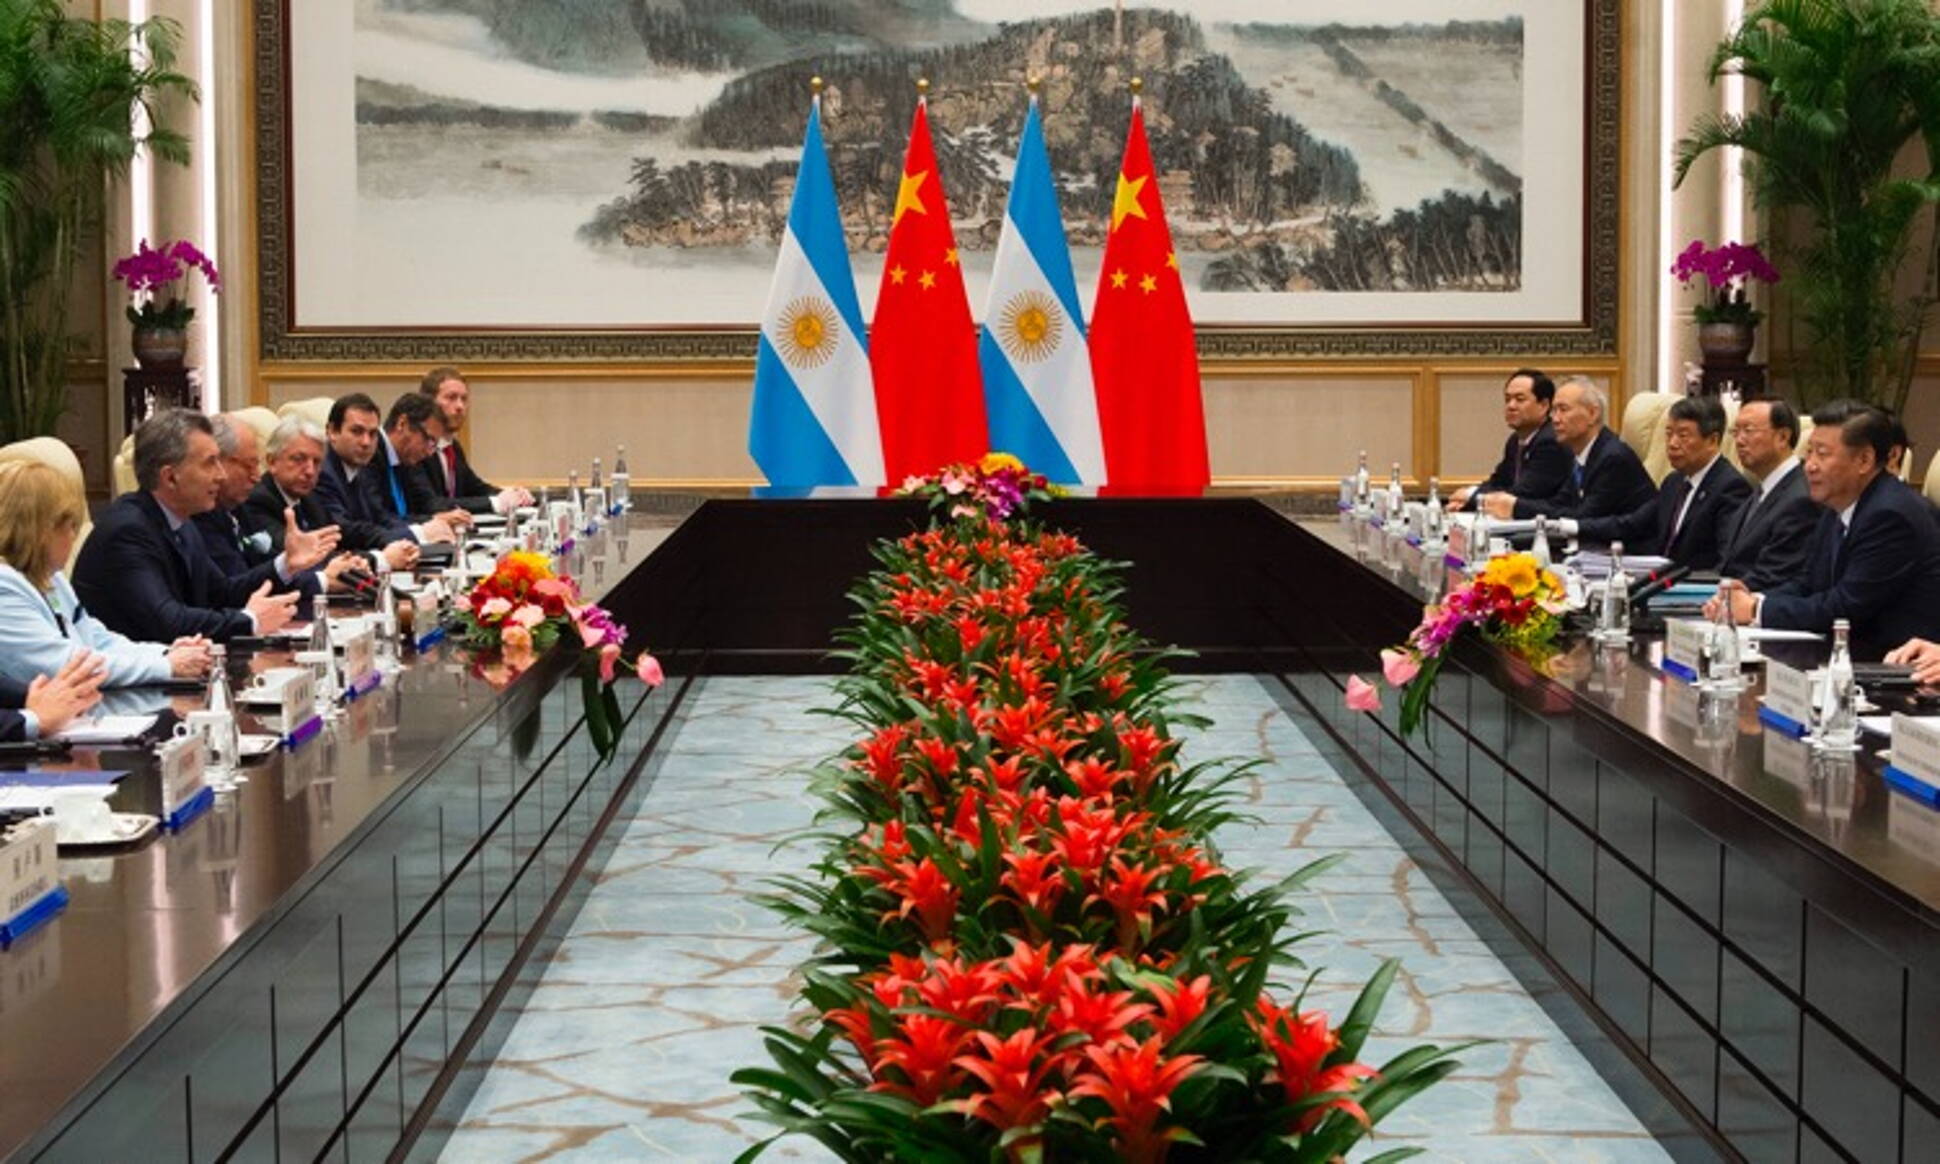 El presidente Macri y su par chino coincidieron en potenciar las relaciones comerciales y culturales